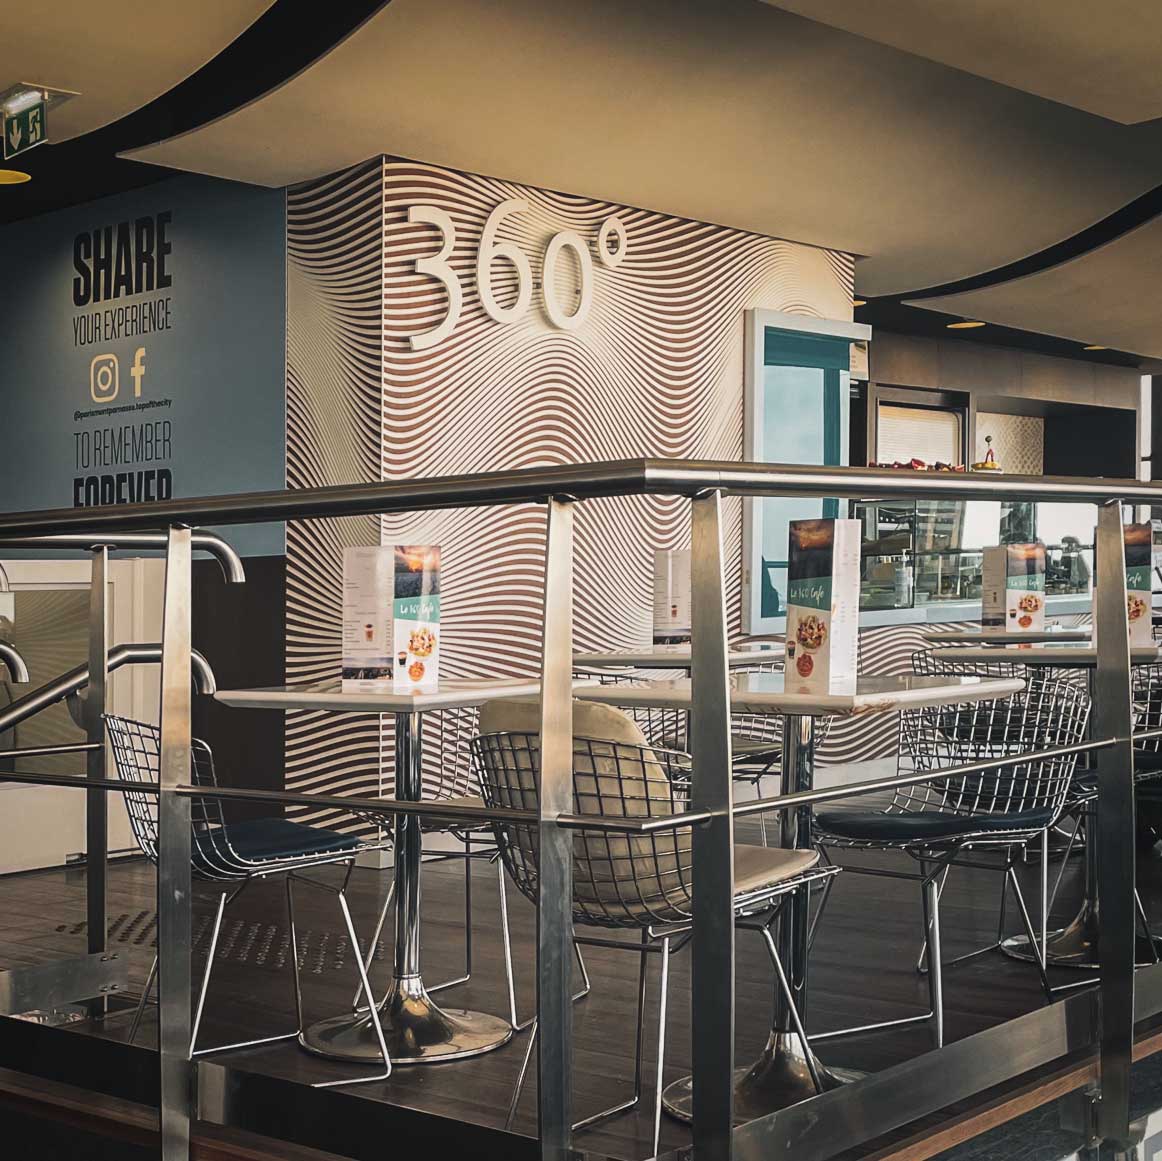 360-cafe-montparnasse